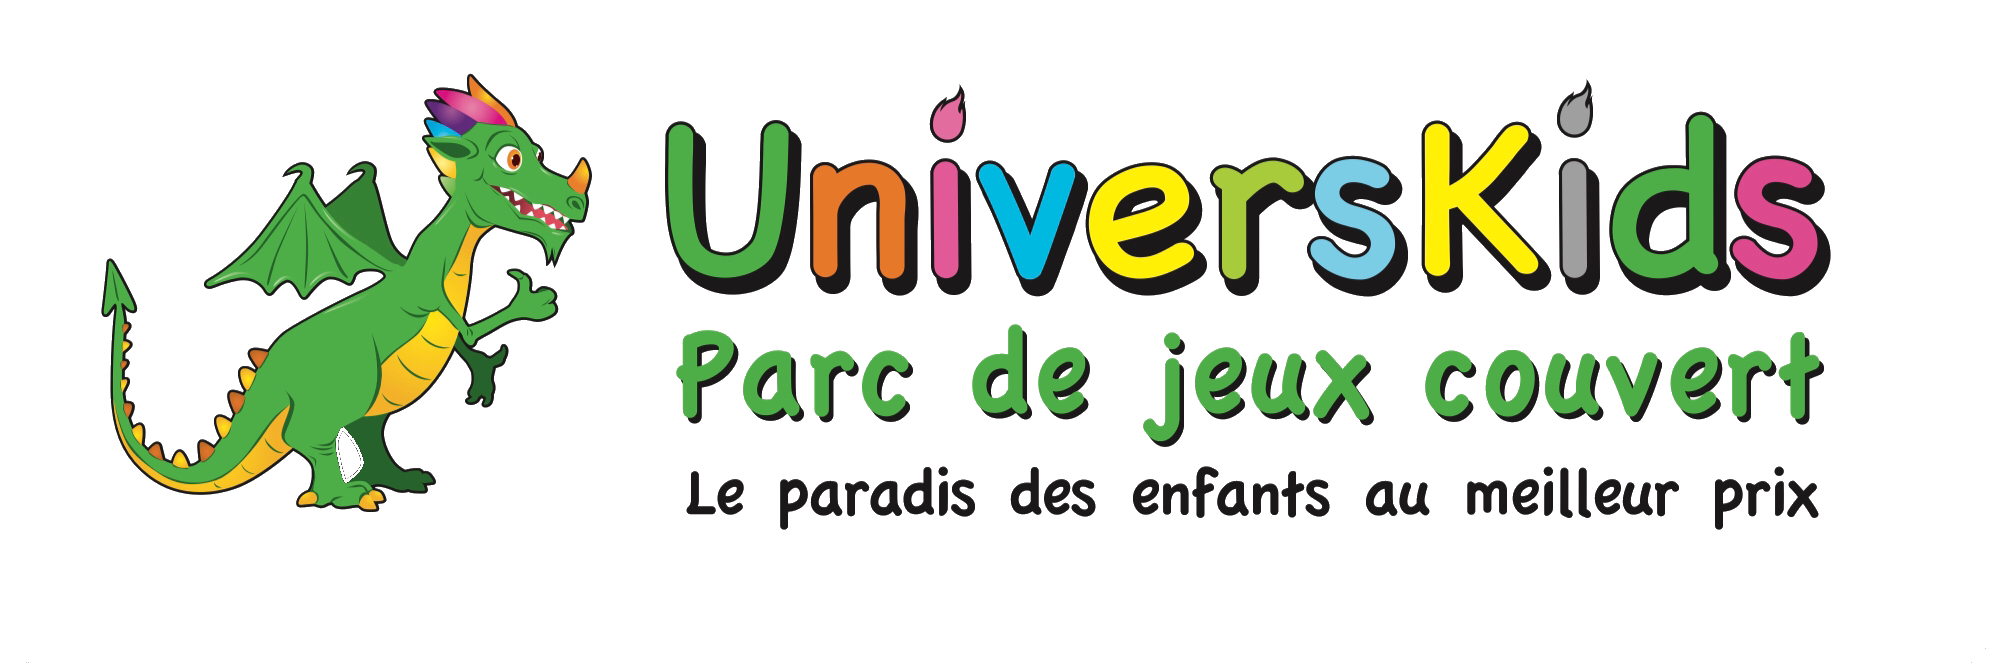 UNIVERSKIDS logo complet